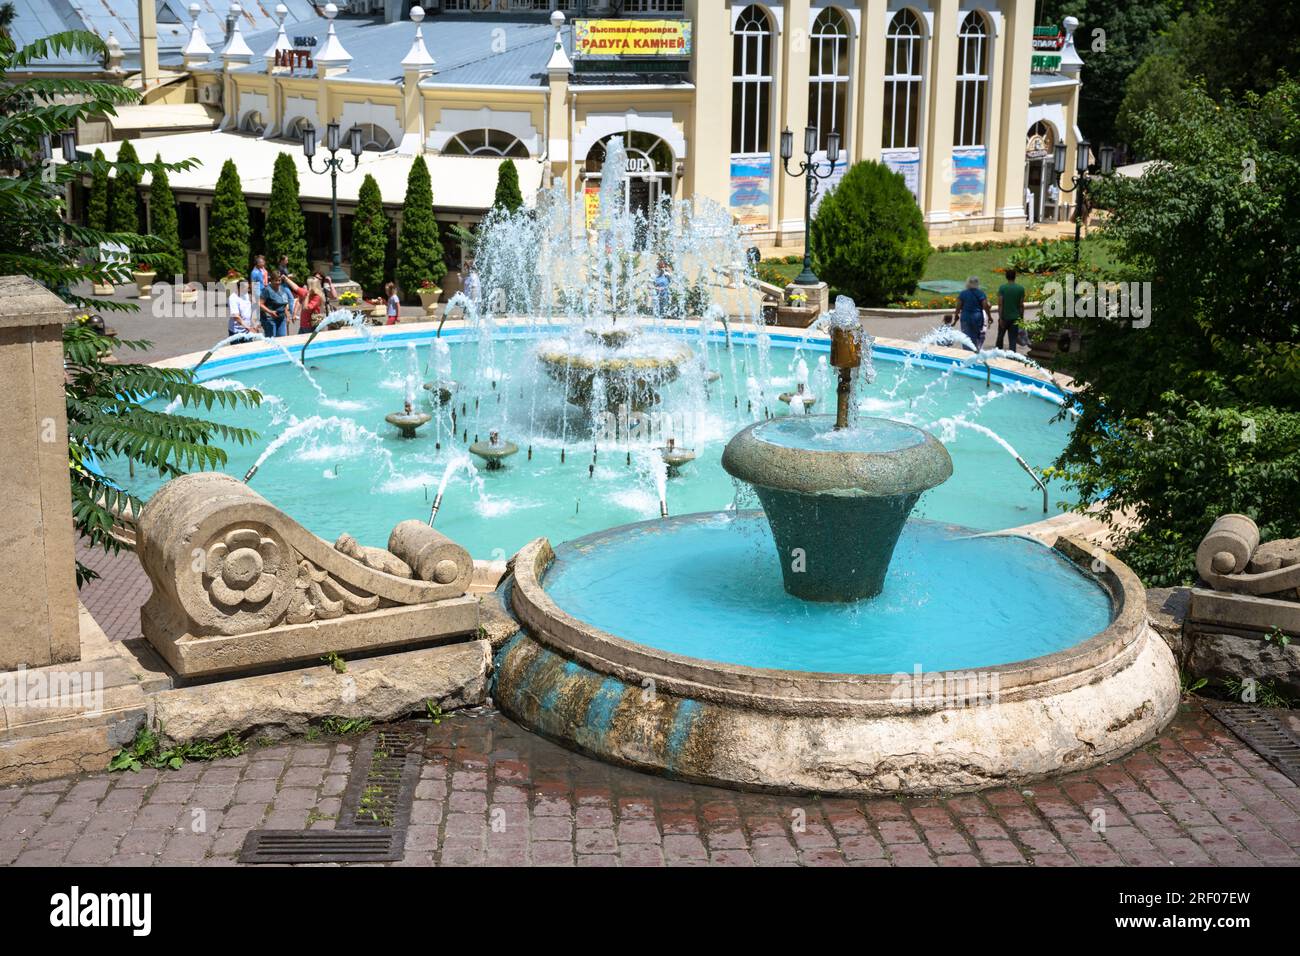 Wunderschöner Brunnen im Sommer in Yessentuki, Kurstadt in der kaukasischen Mineralwasserregion, Stavropol Krai, Russland. Stockfoto